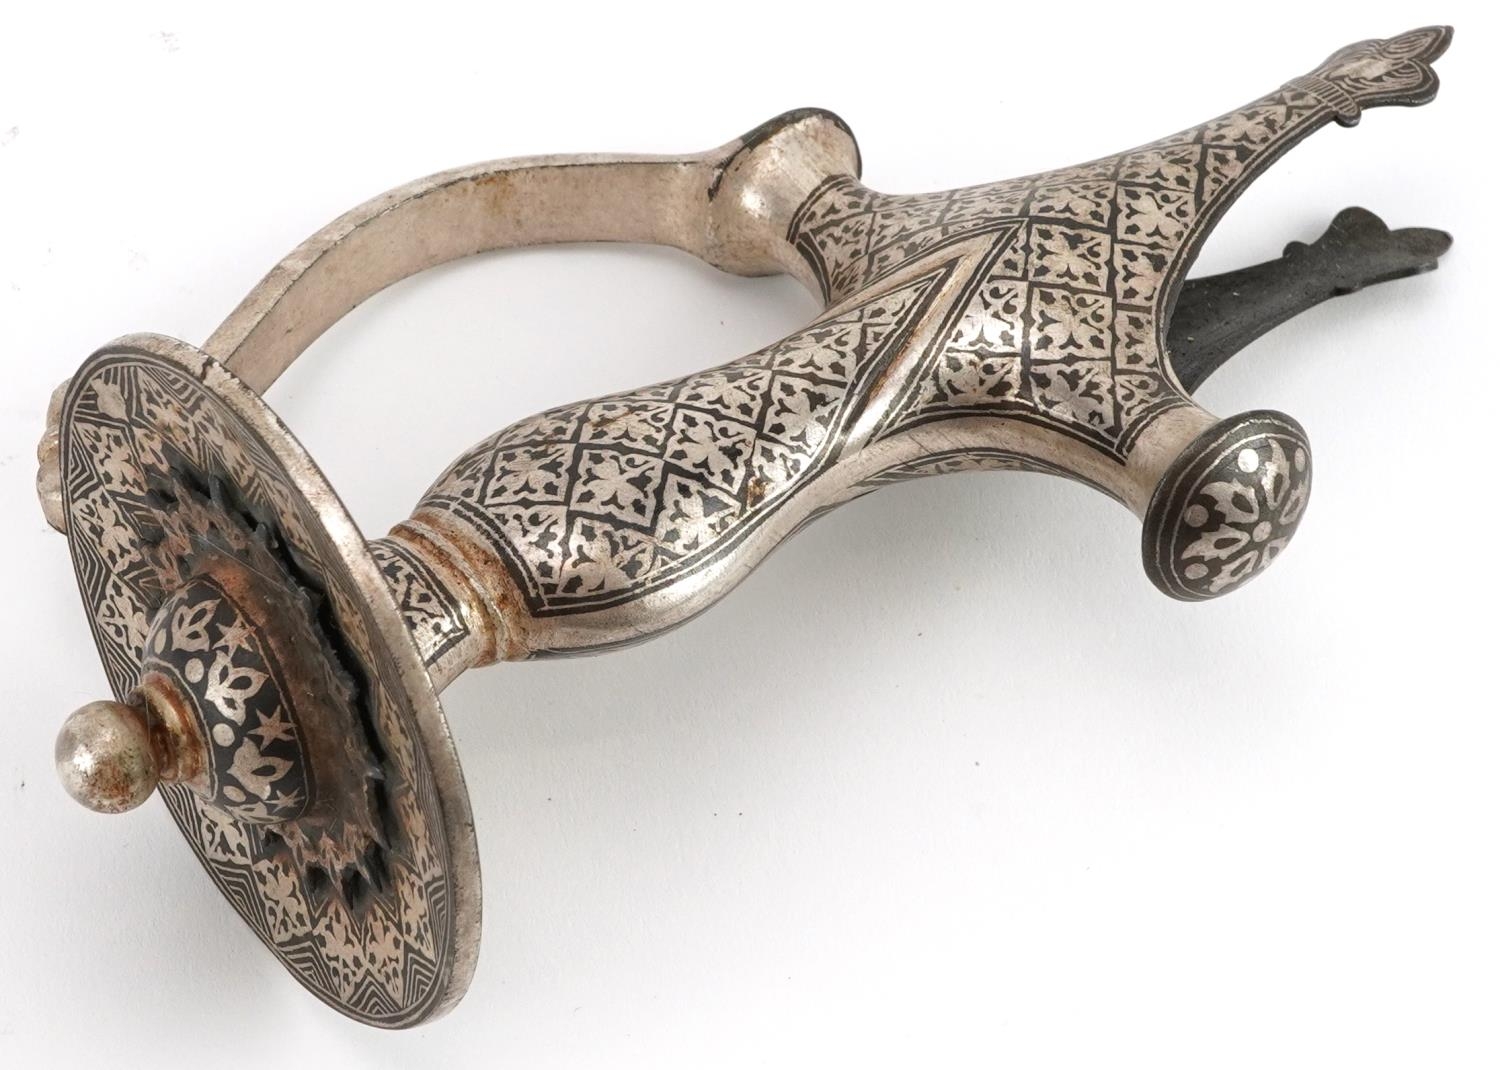 Indian Bidriware sword handle, 20cm in length - Image 2 of 4